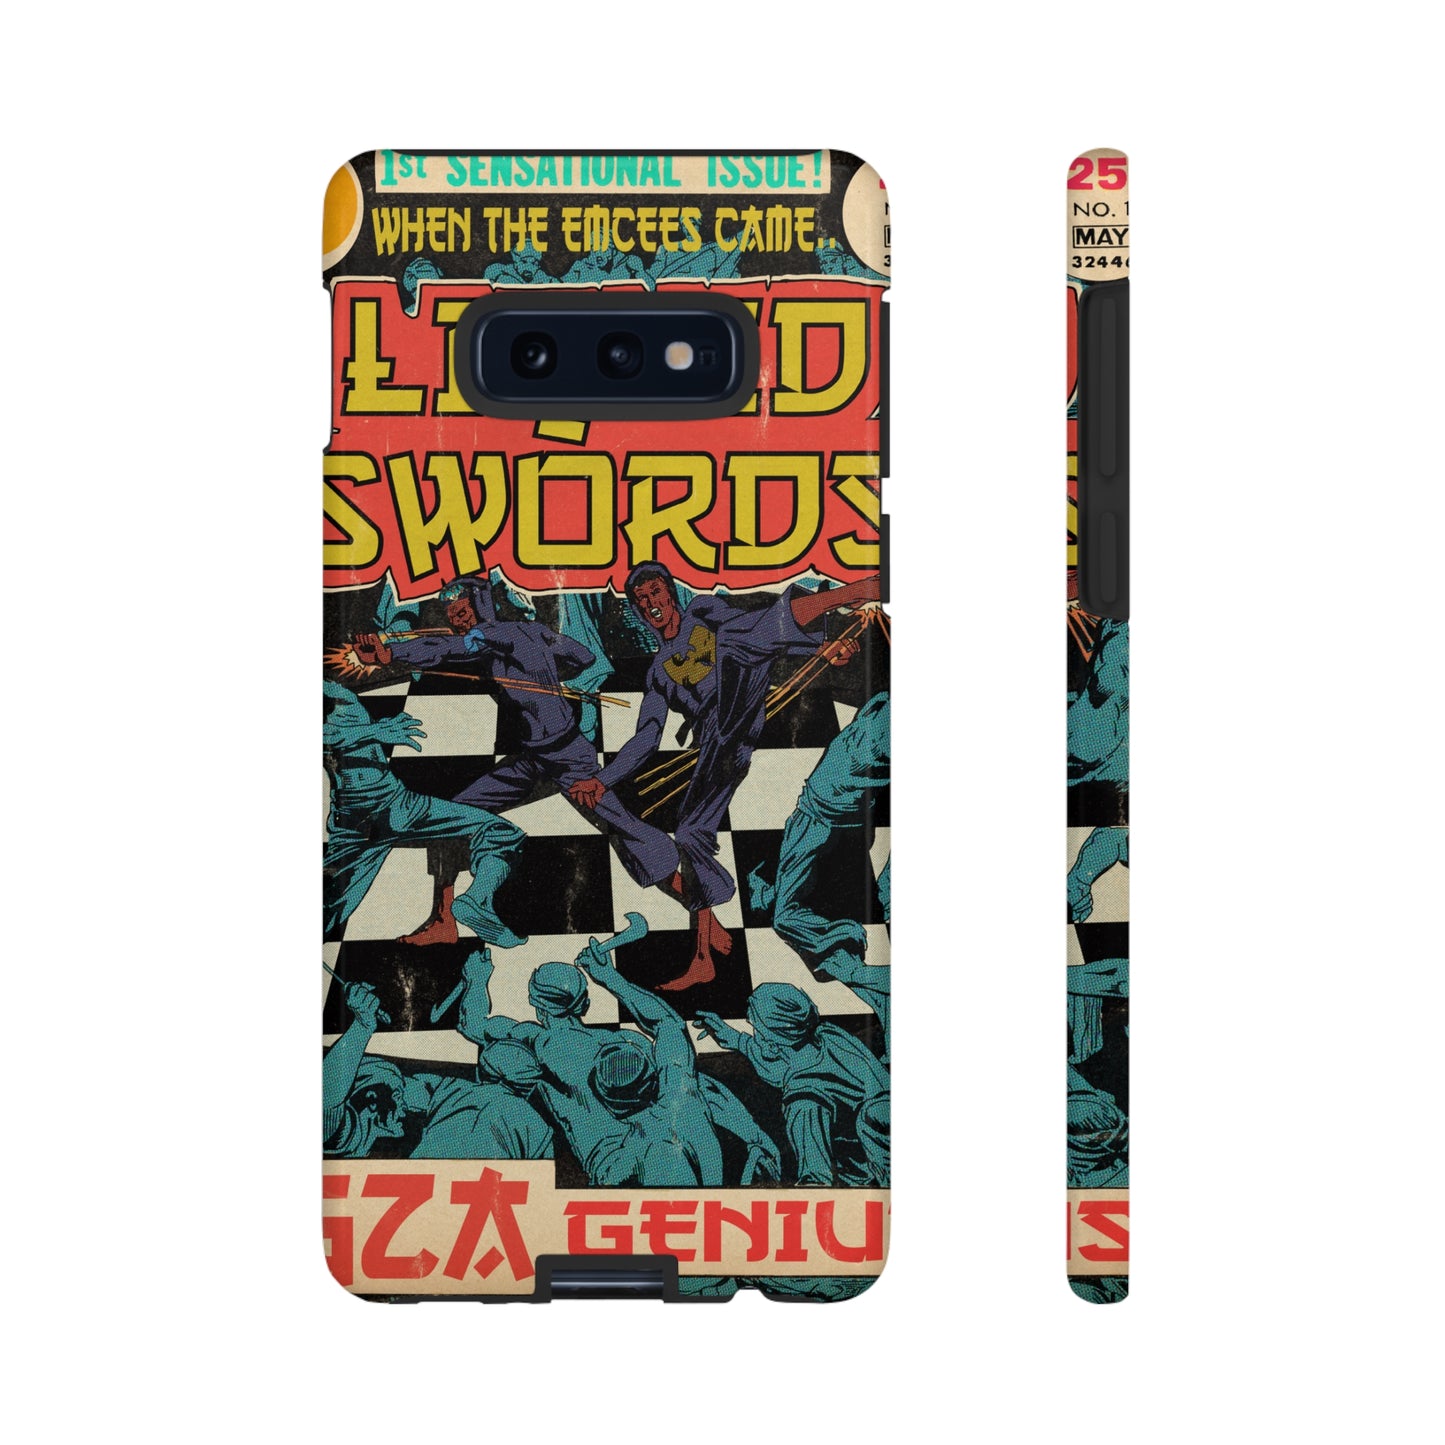 GZA/Genius - Liquid Swords - Tough Phone Cases